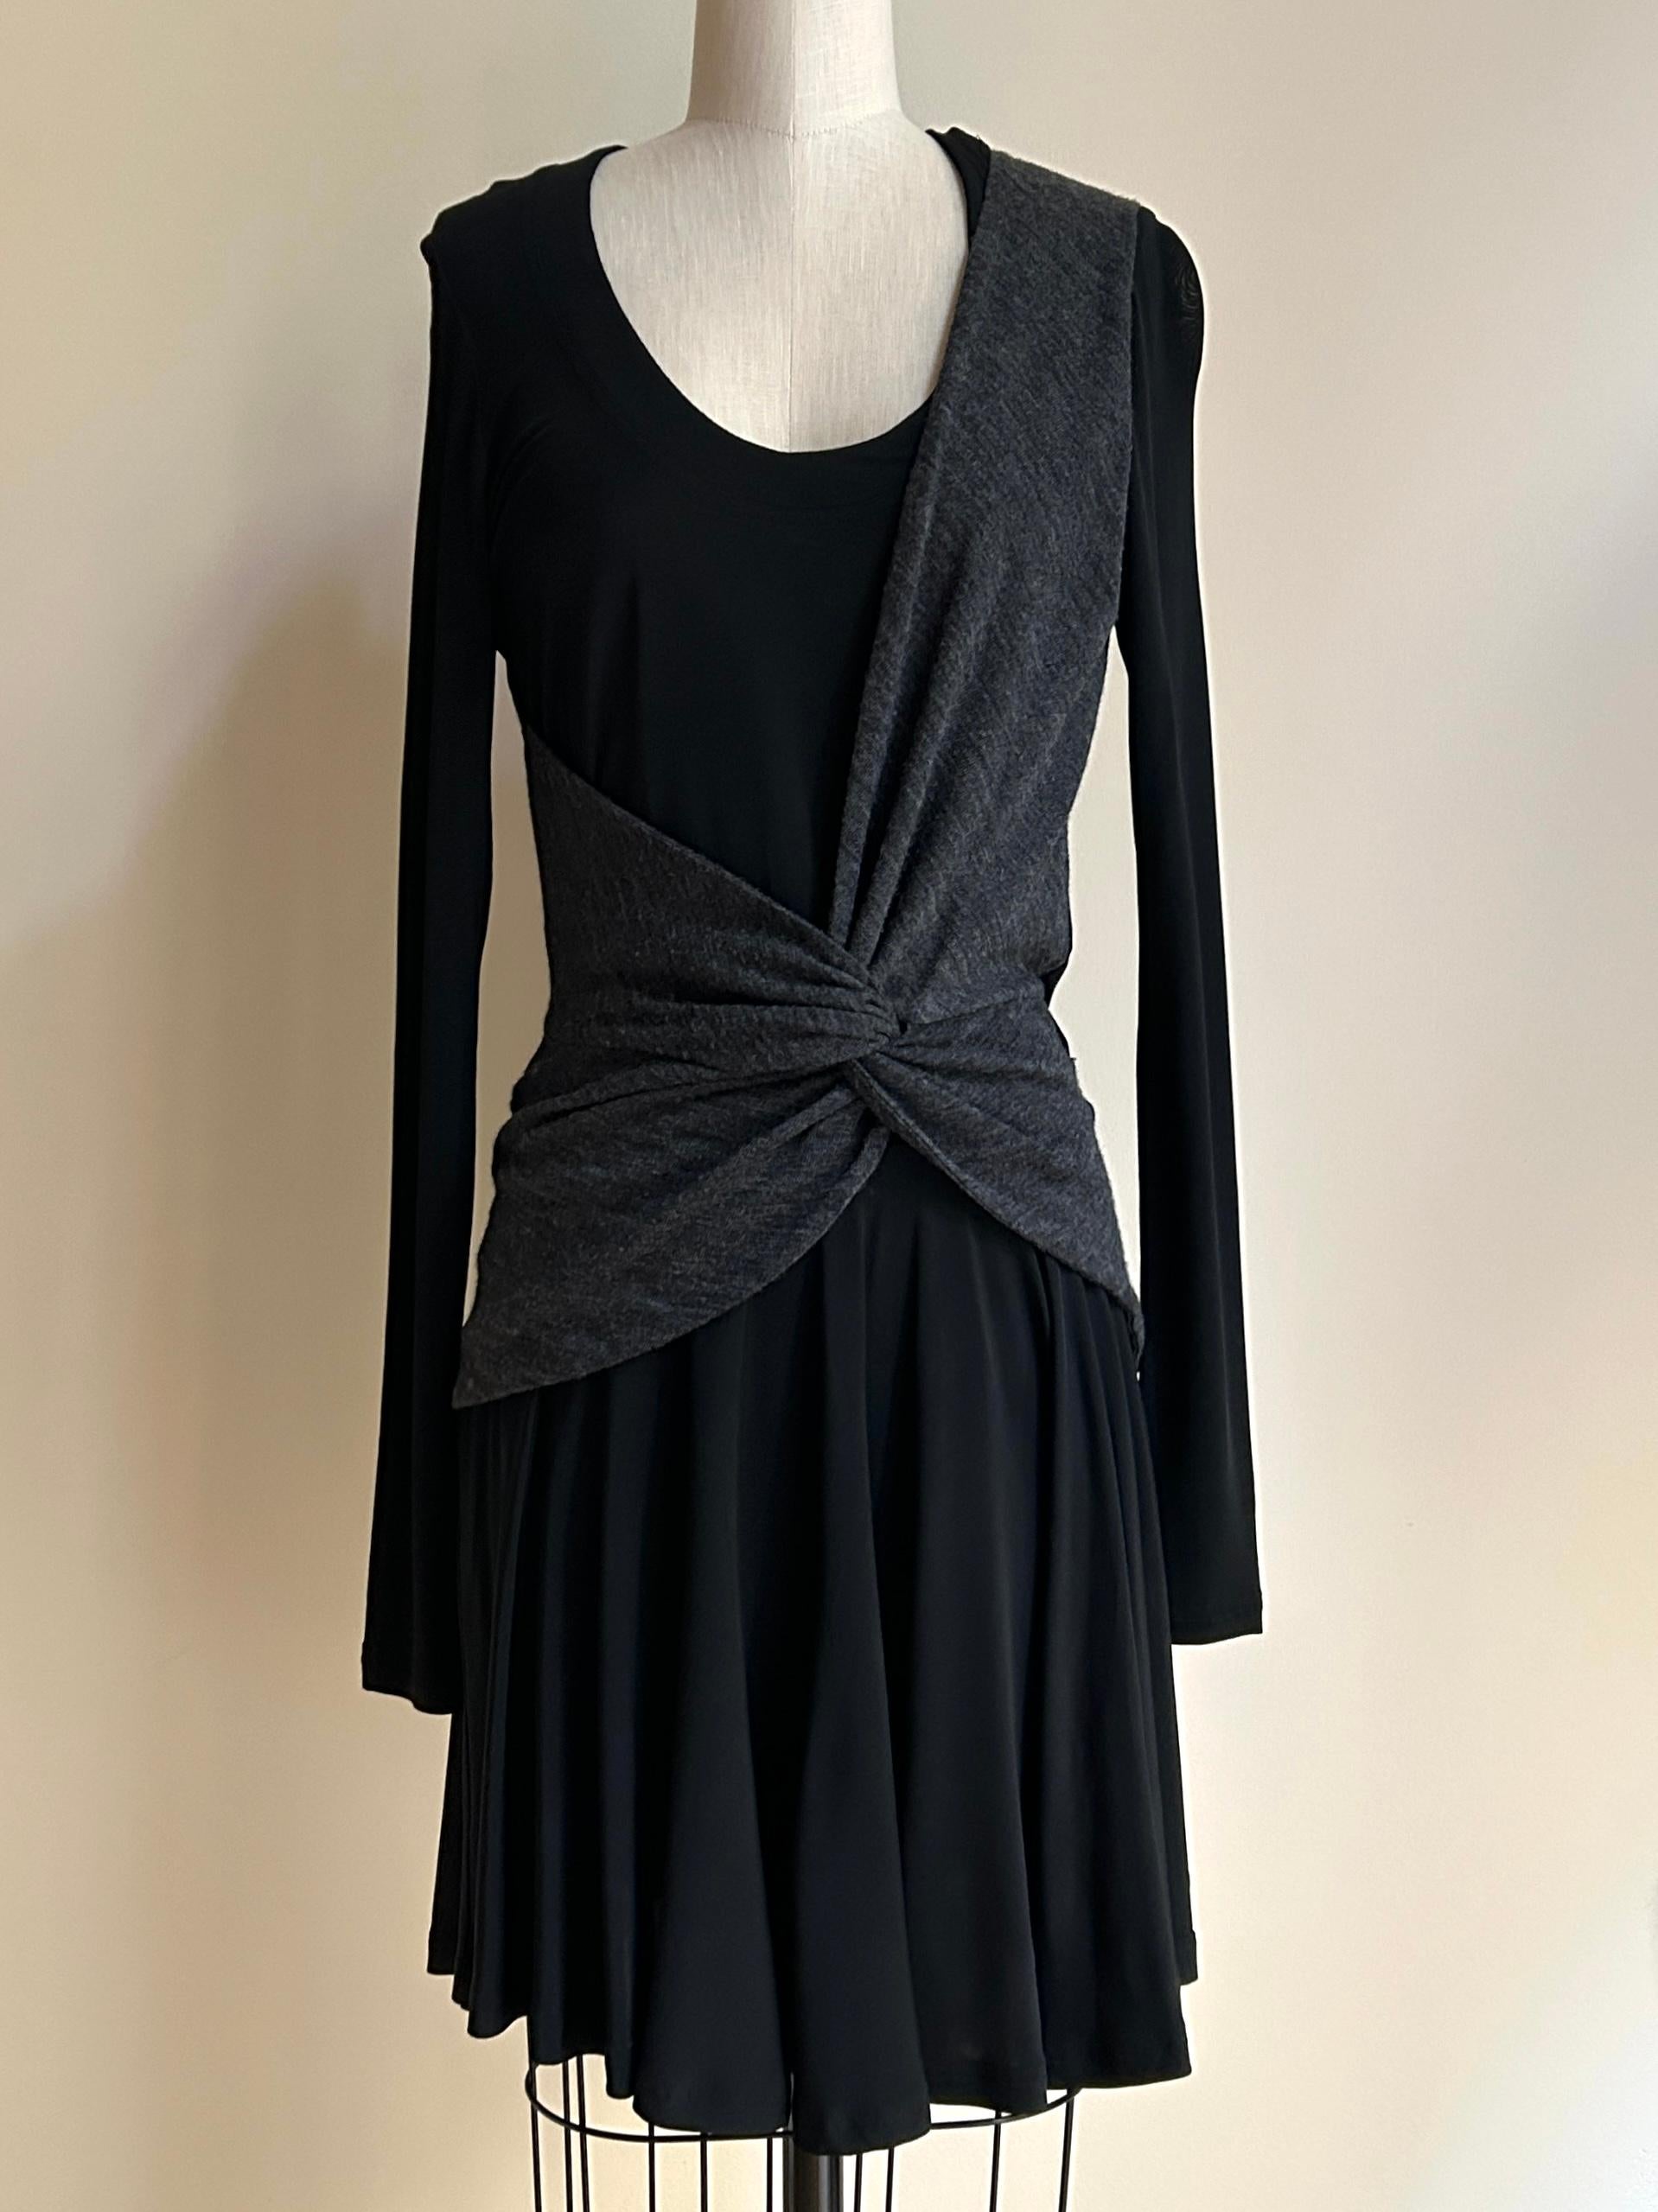 La robe en jersey noir Balenciaga 2004 by Nicolas Ghesquiere est dotée d'une enveloppe anthracite inspirée de la tenue d'entraînement d'une ballerine. Encolure dégagée, manches longues.

95% acétate, 5% spandex. 
L'enveloppe grise ressemble à un